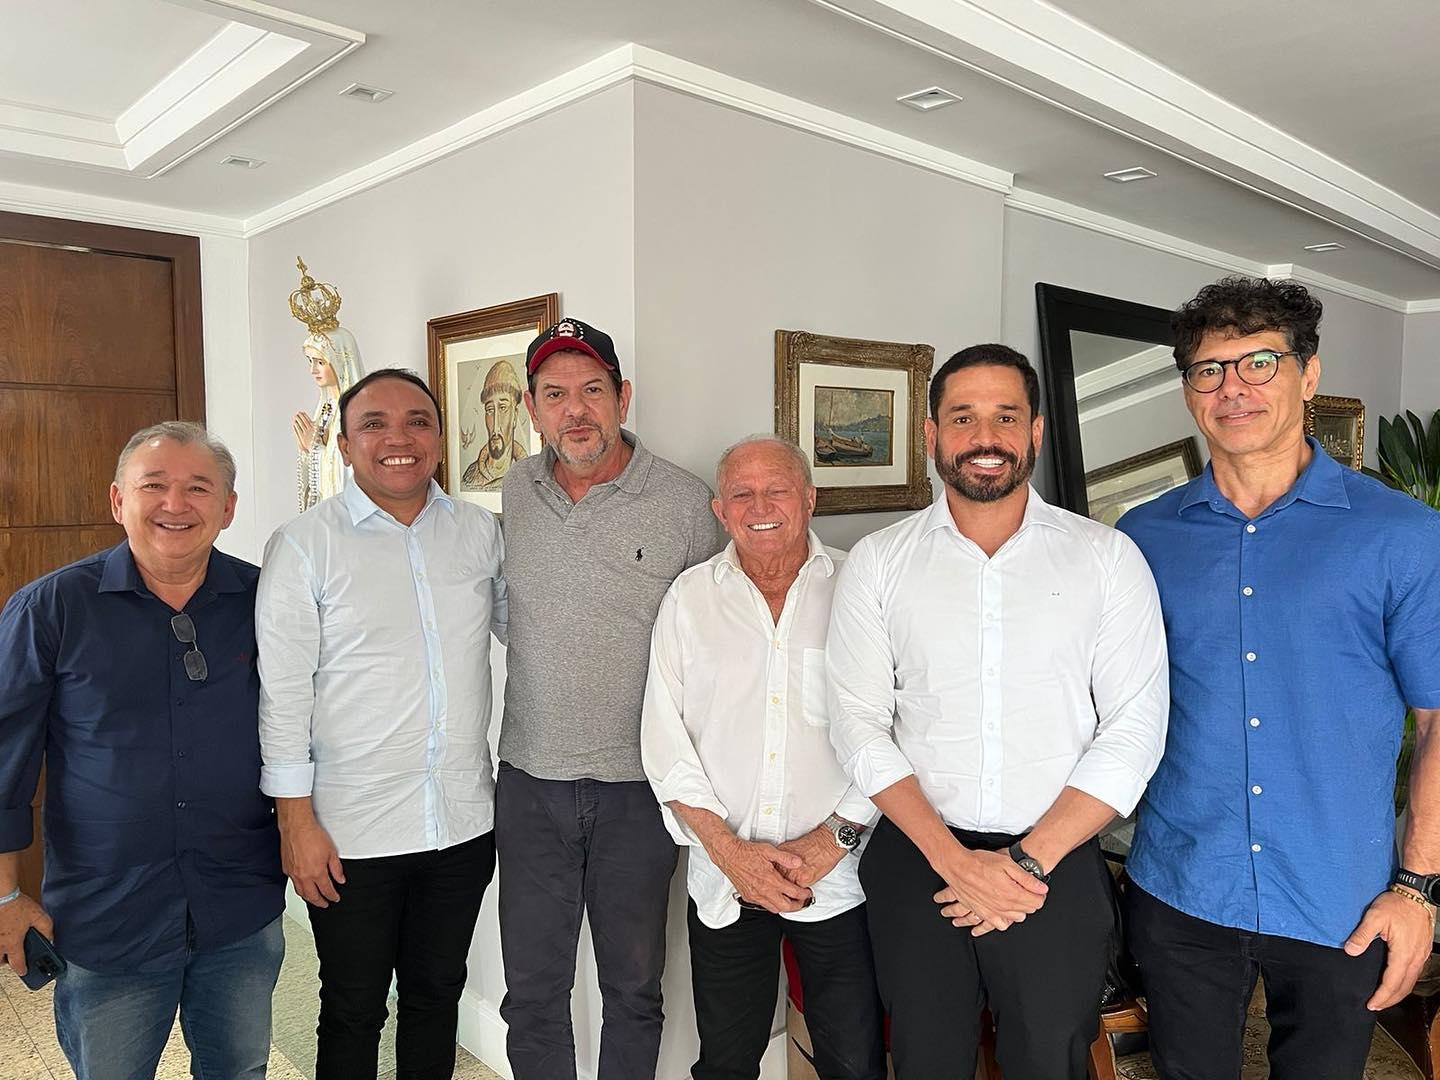 A imagem mostra os pré-candidatos de oposição em Aquiraz e em Eusébio, Jair Silva (PP) e Edson Sá (PSB) posando ao lado de aliados para o pleito municipal. O senador Cid Gomes é um dos presentes.